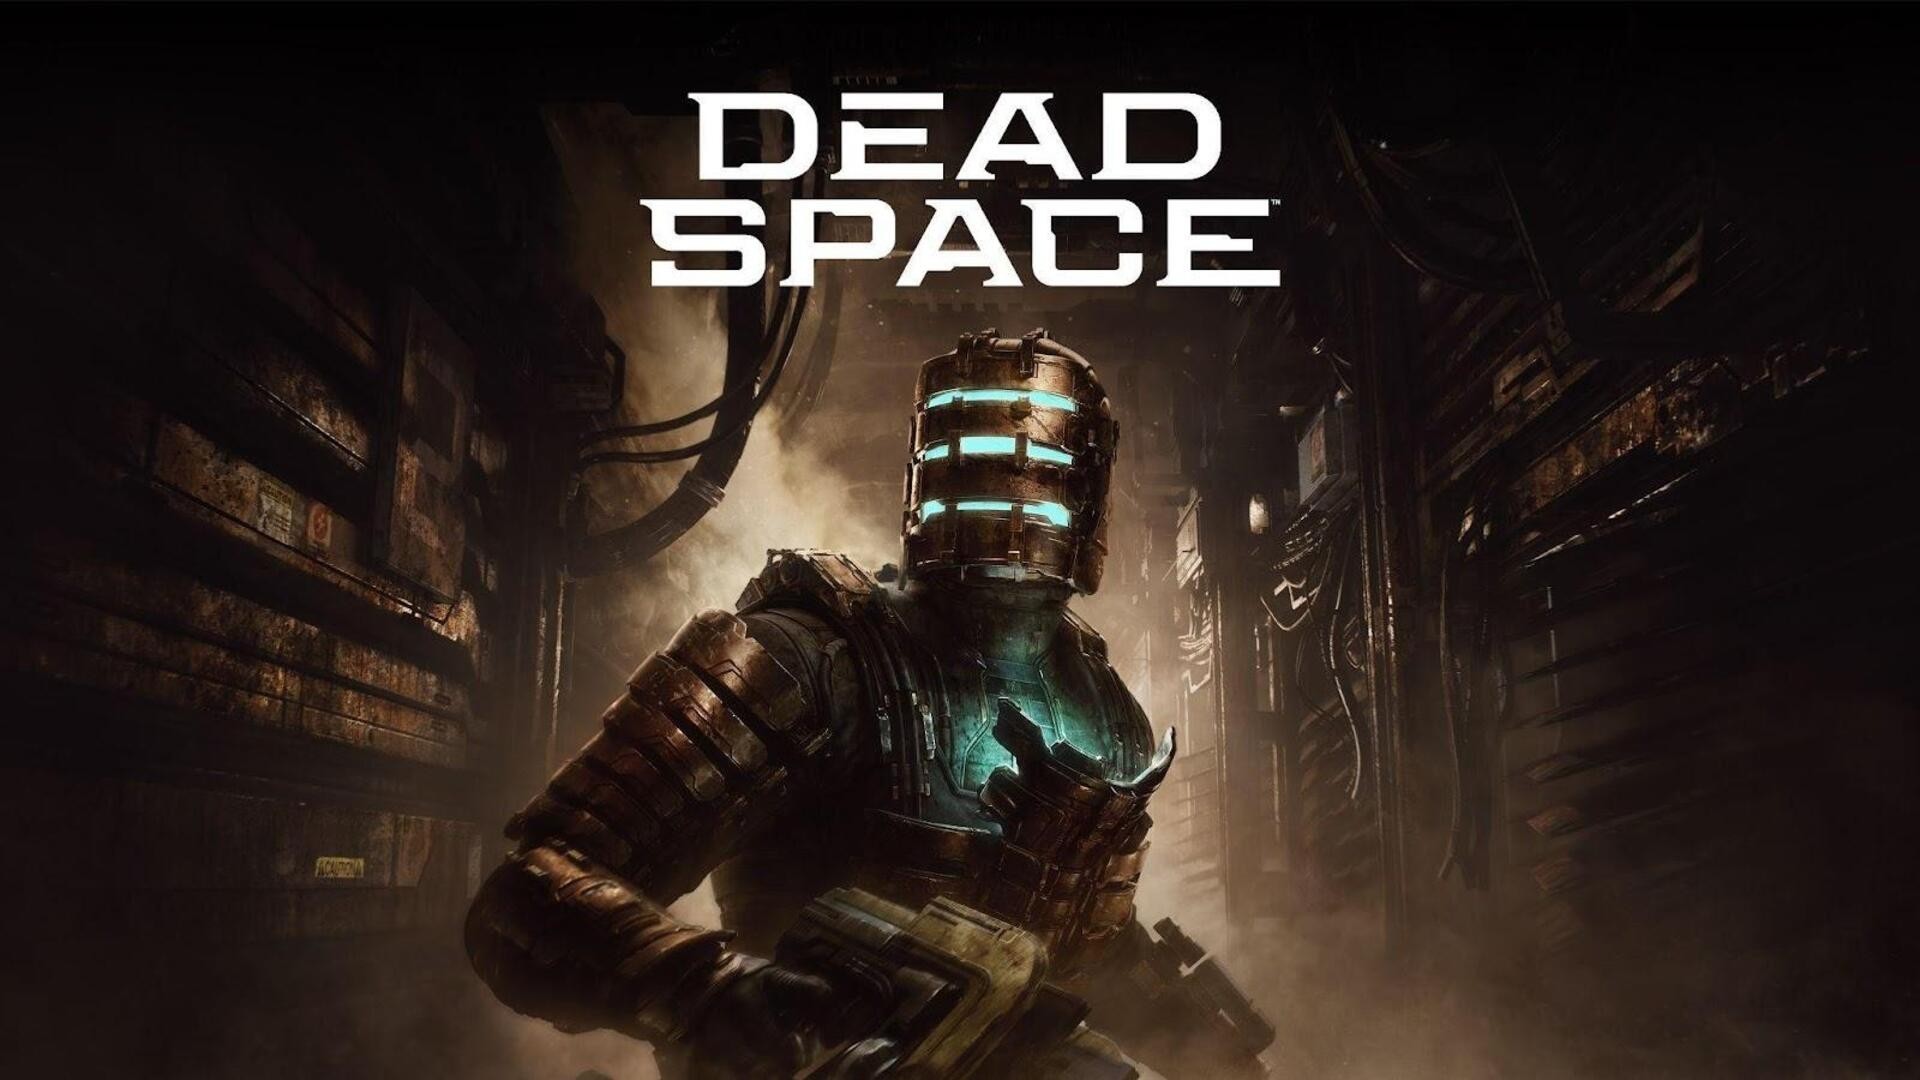 O que todos querem em Dead Space 3